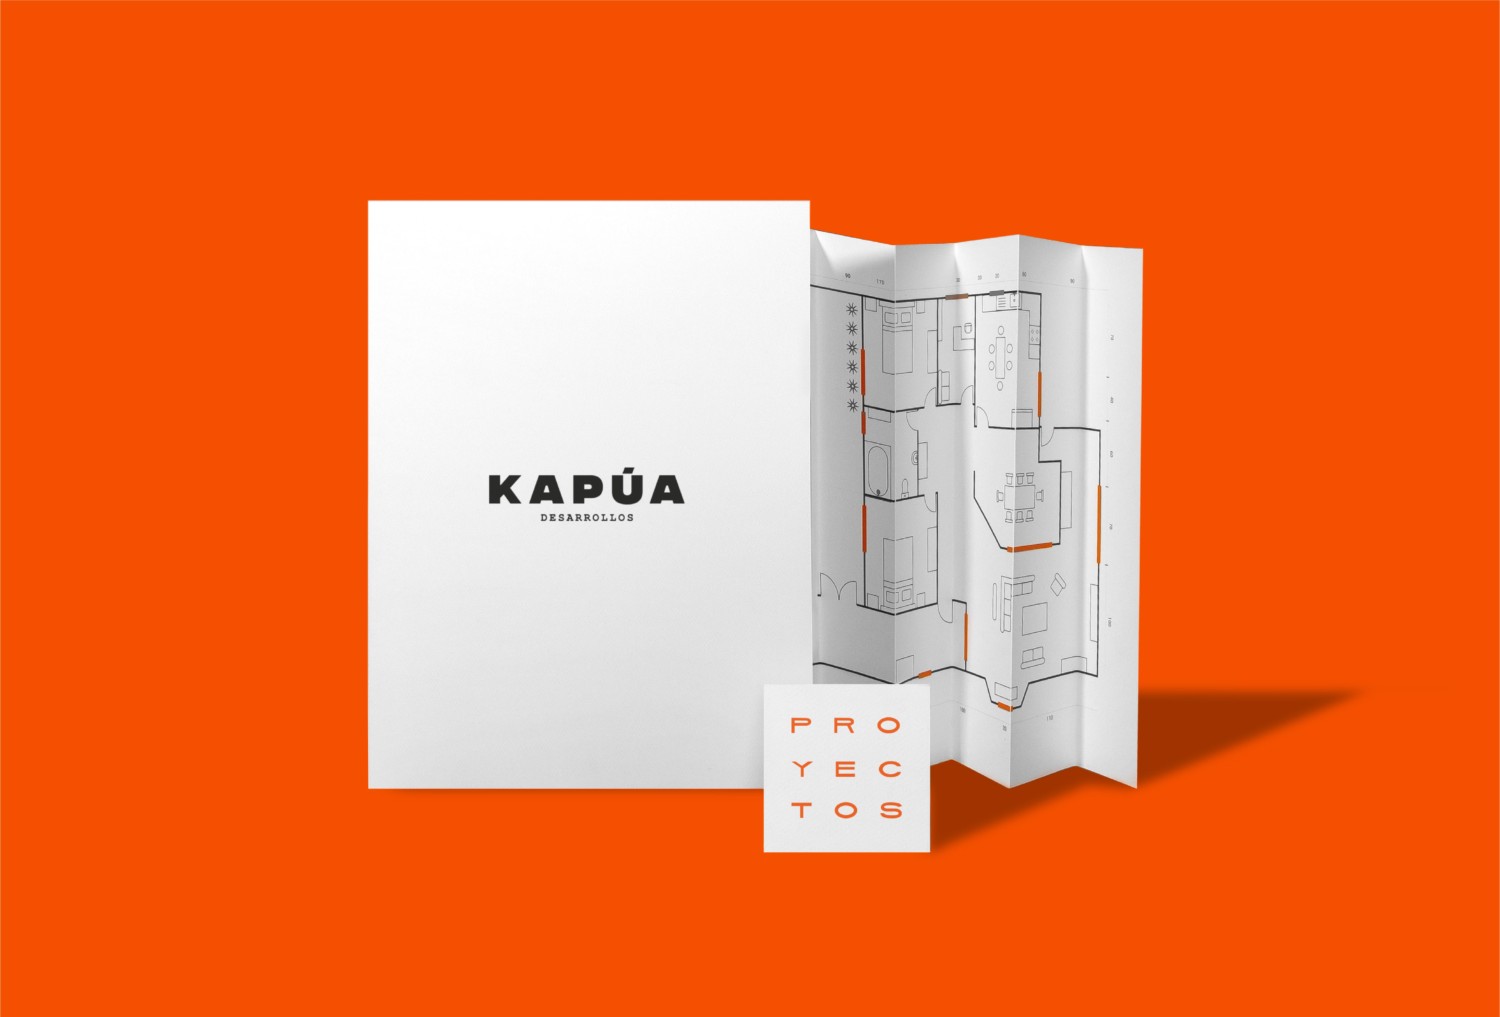 房地产开发商Kapúa品牌和项目画册设计